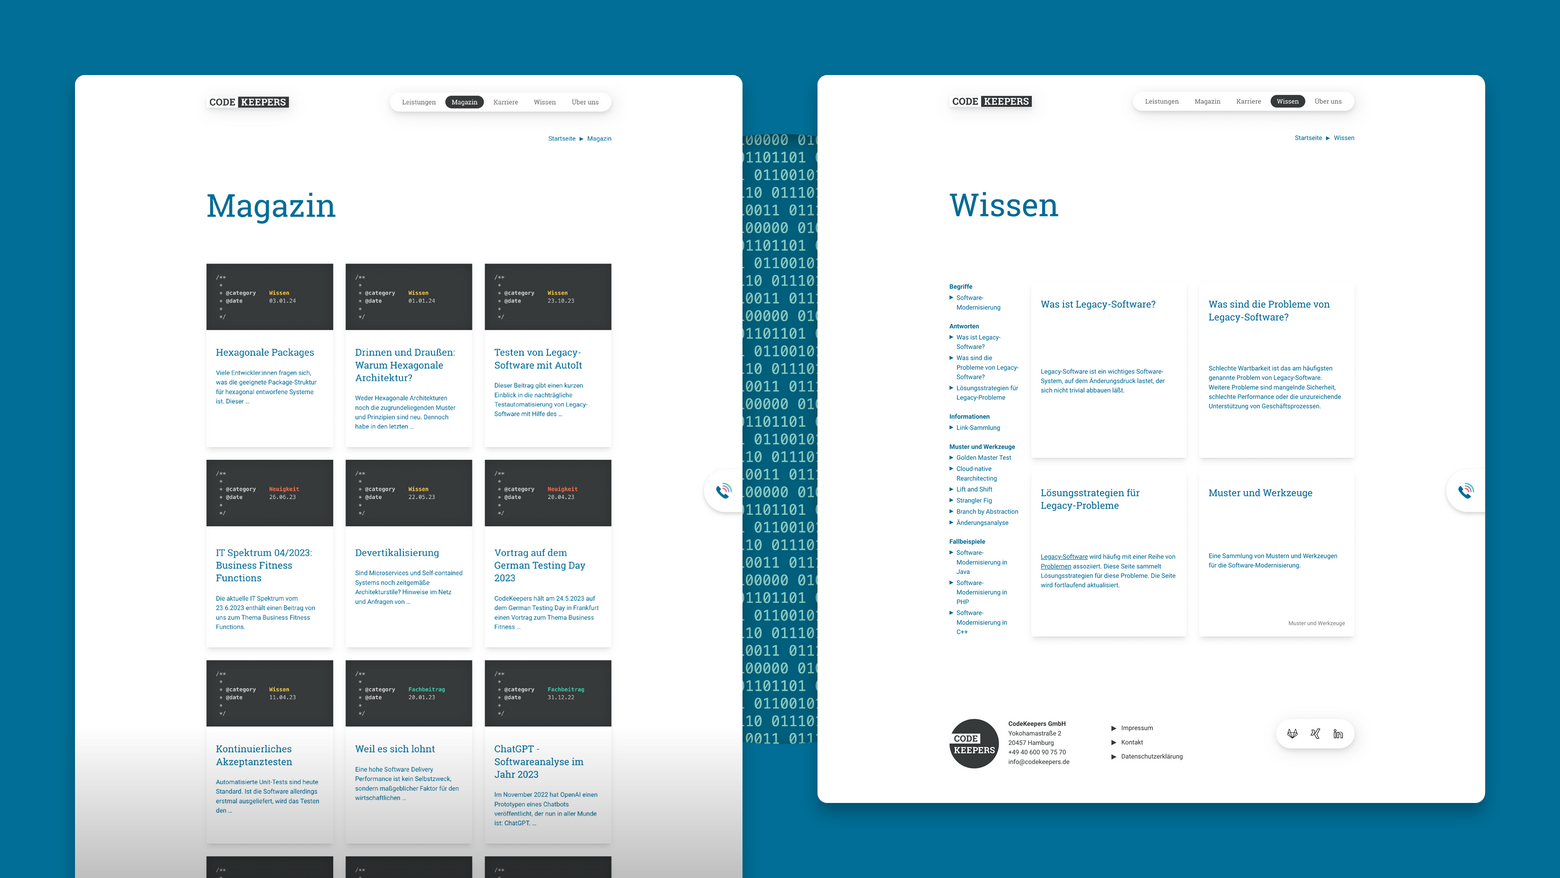 Grafik von zwei Bildschirmscreenshots, die sich auf die Content-Arbeit von visuellverstehen für diesen Kunden beziehen: Das Magazin und den Wiki-Bereich.